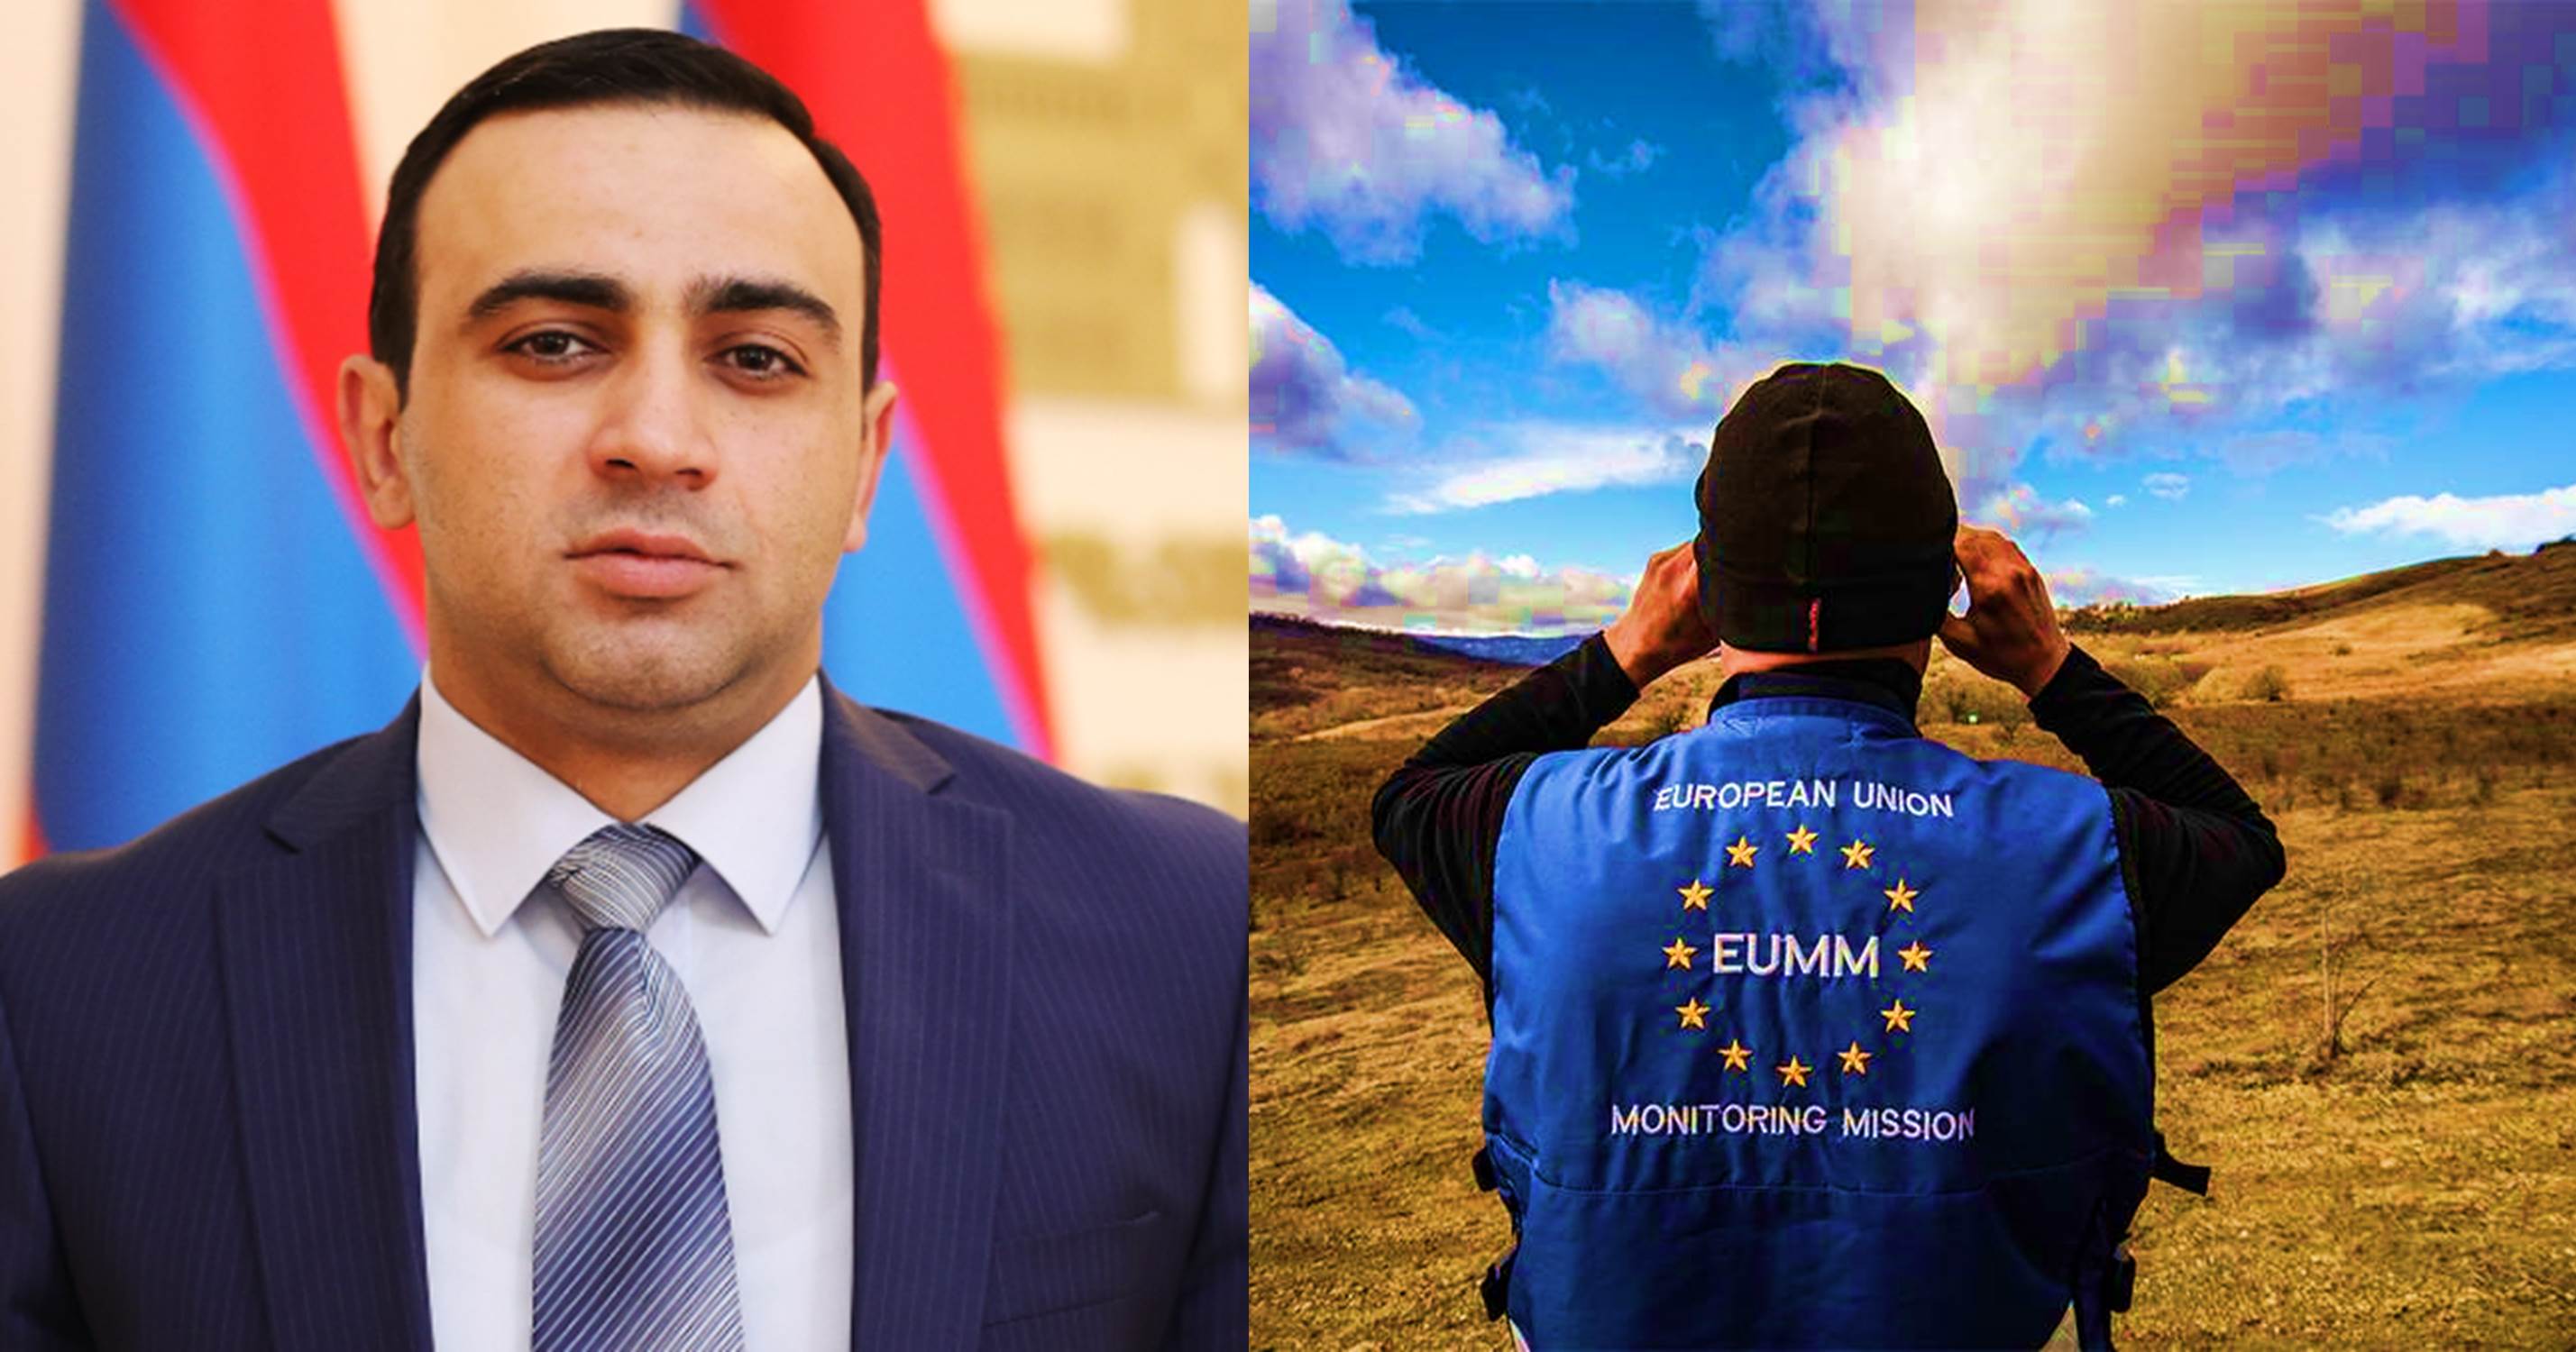 ԵՄ կողմից Հայաստանի սահմաններին առնվազն 2 տարով դիտորդական առաքելության տեղակայումը միտված է Հայաստանի ինքնիշխանության և ժողովրդավարության պահպանմանը